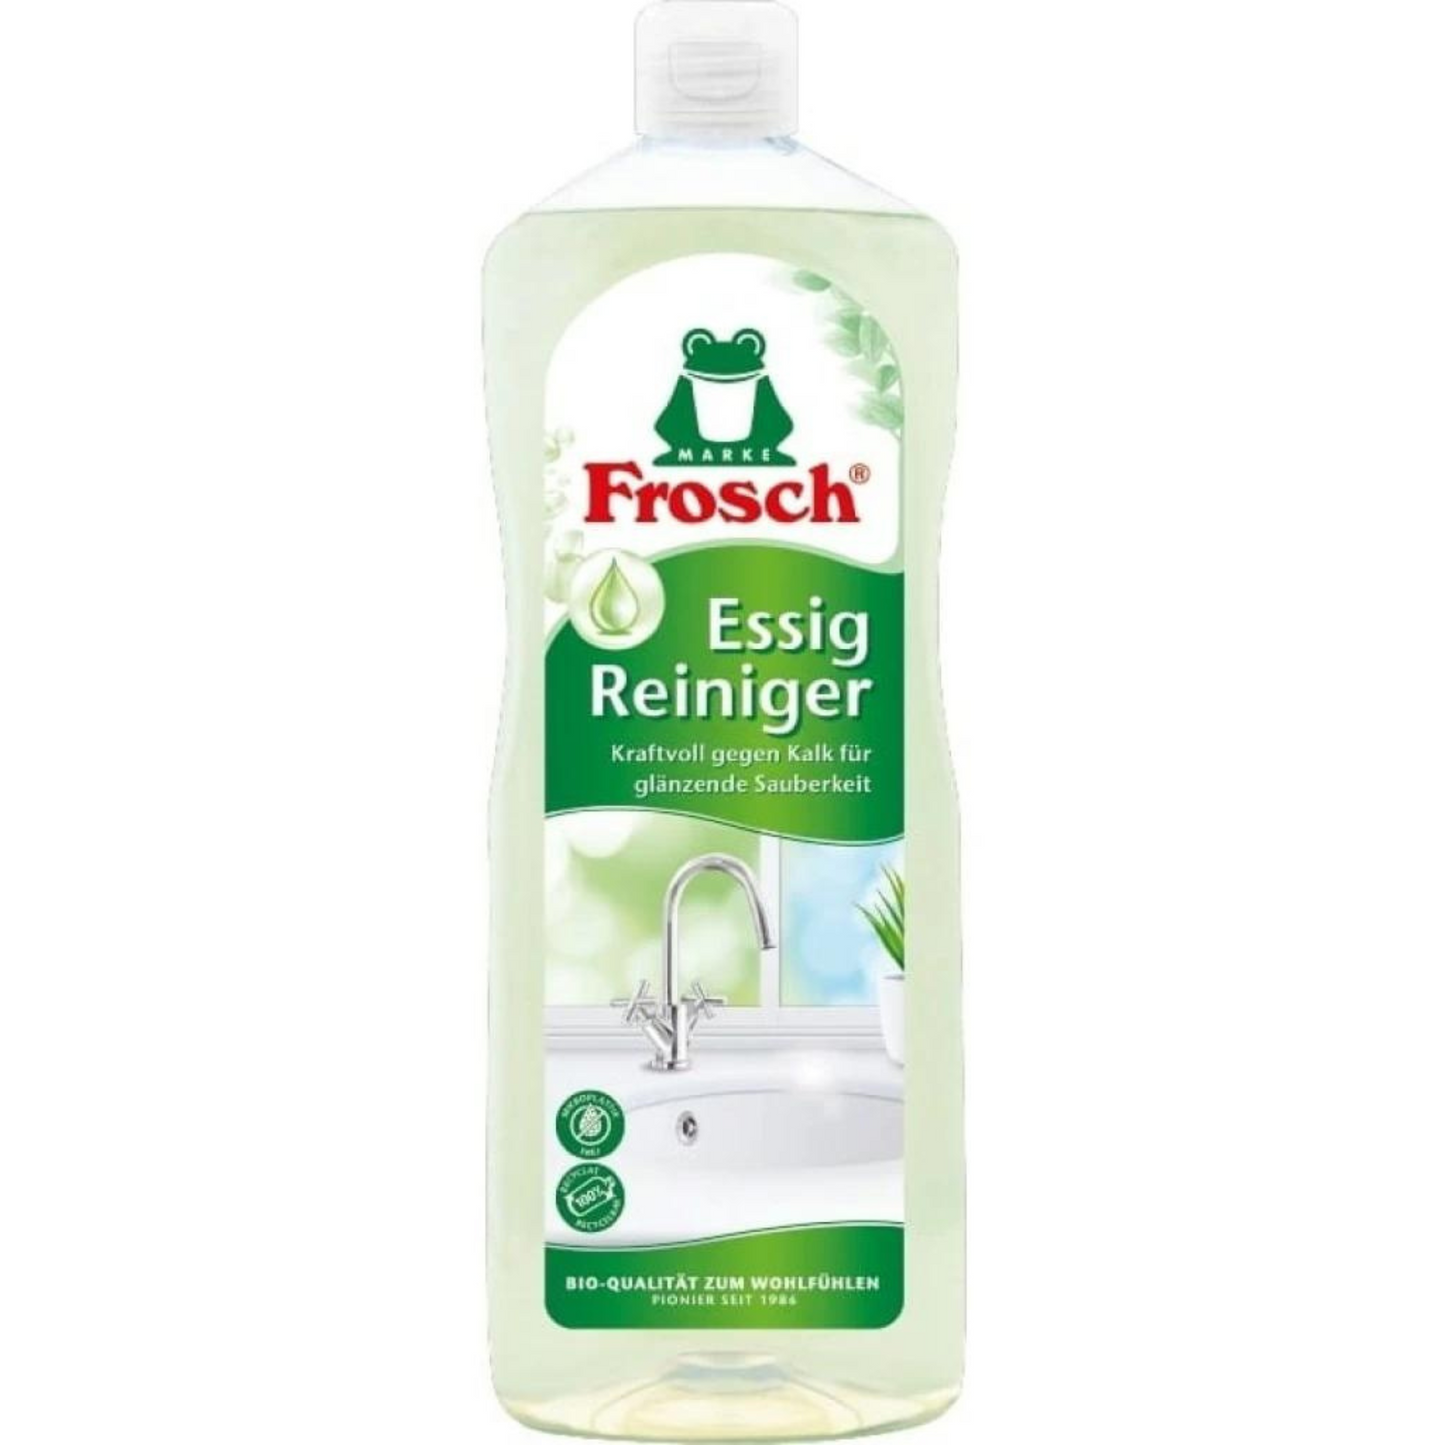 Primary Image of Frosch Vinegar (Essig Reiniger) All-Purpose Cleaner (1000 ml)